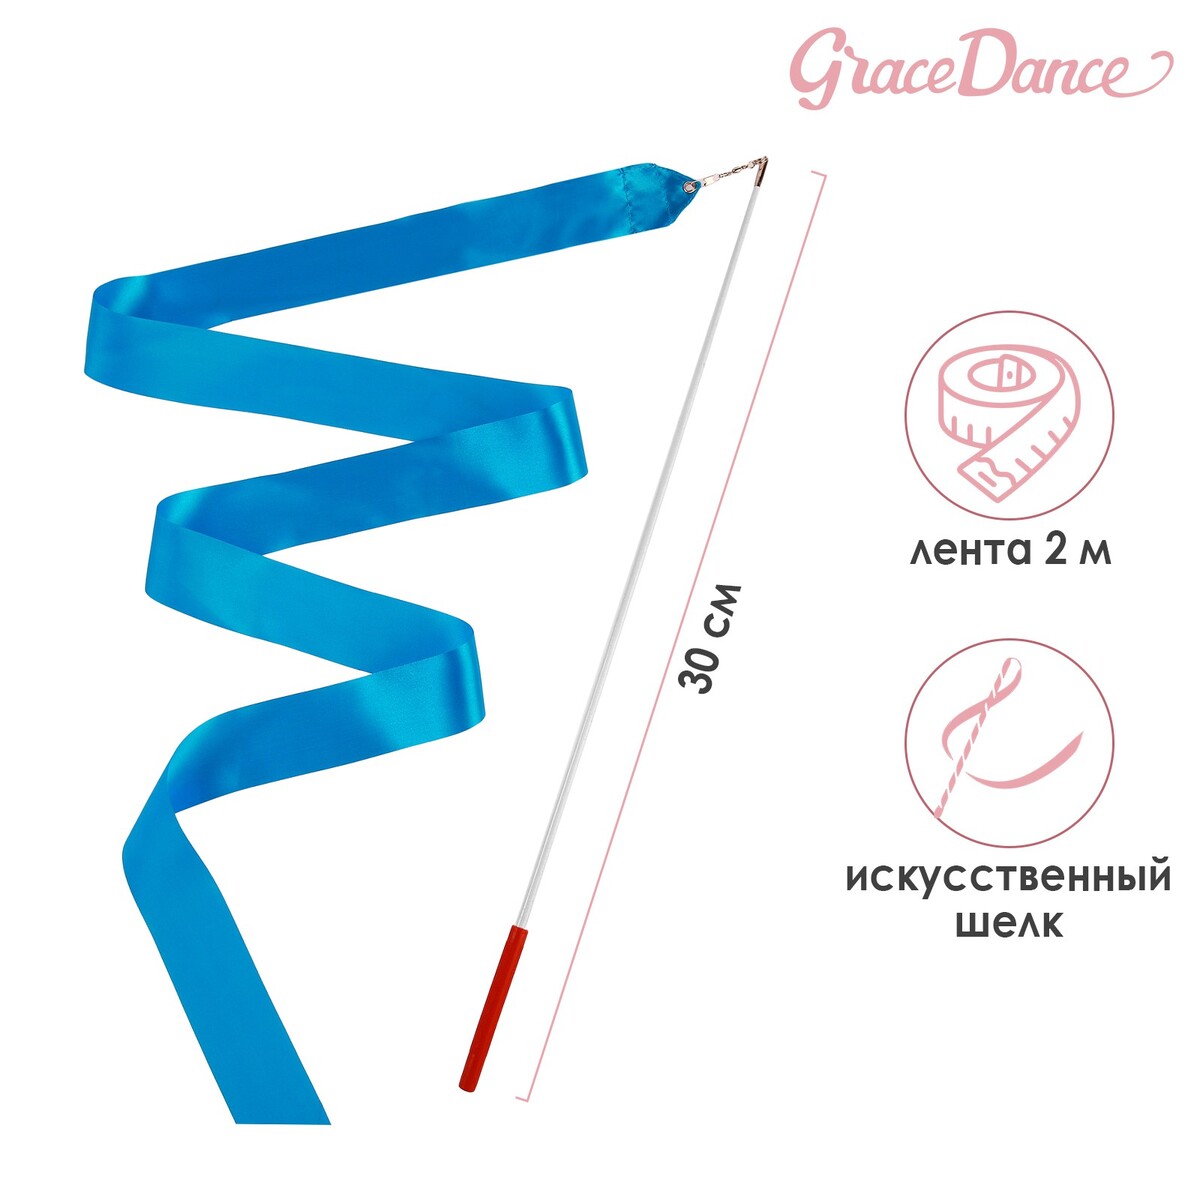 Лента для художественной гимнастики с палочкой grace dance, 2 м, цвет голубой лента для художественной гимнастики с палочкой grace dance 2 м голубой